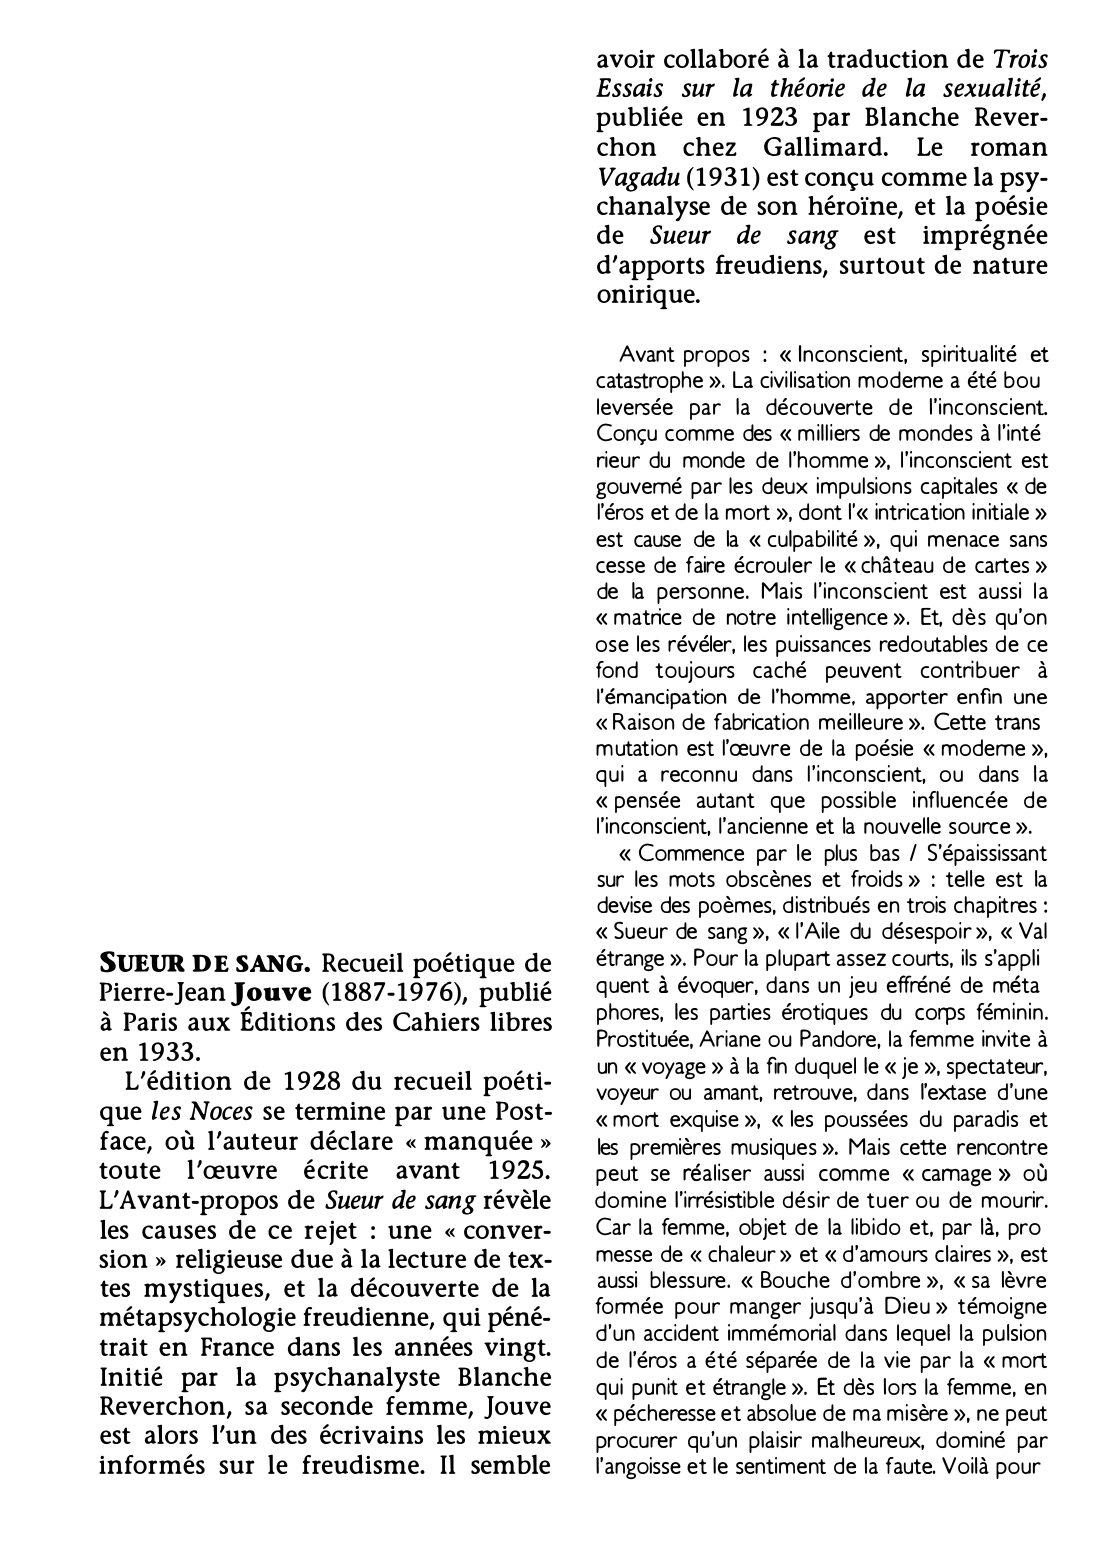 Prévisualisation du document SUEUR DE SANG de Pierre-Jean Jouve (résumé & analyse)